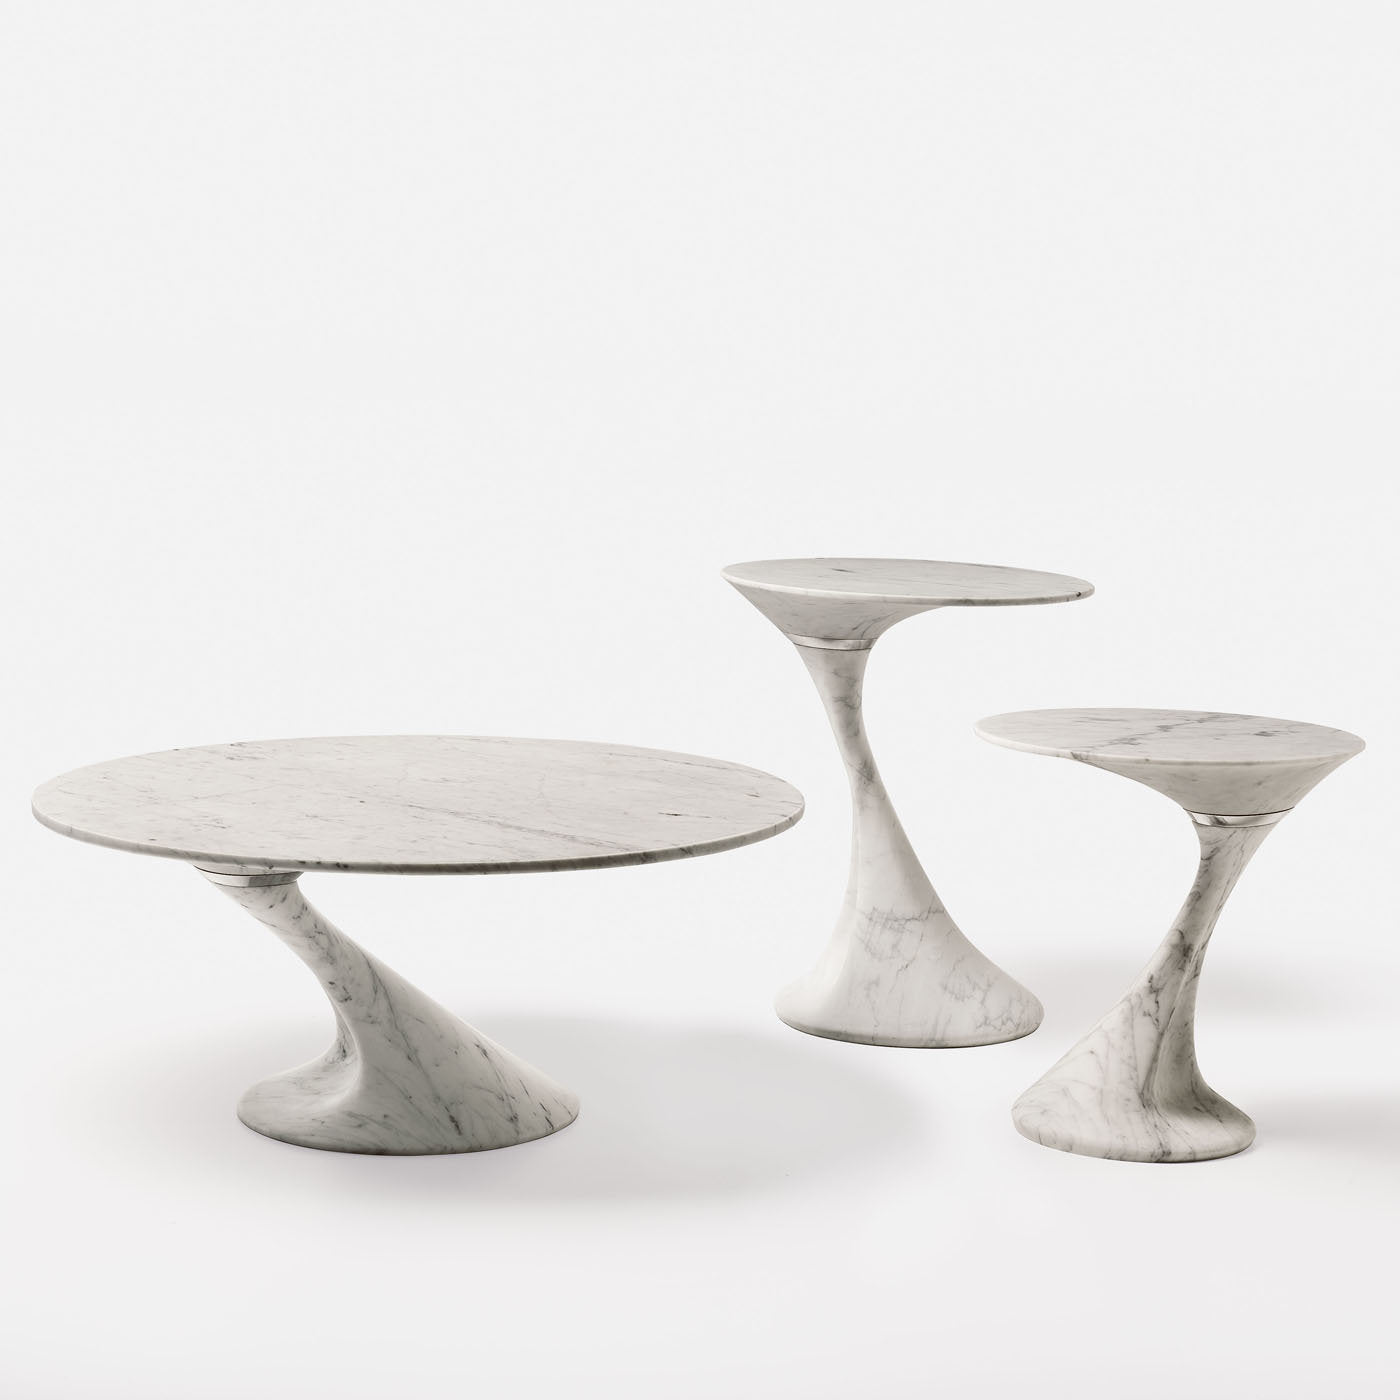 Swan Medium Oval Side Table by Giuseppe Chigiotti - Alternative view 2